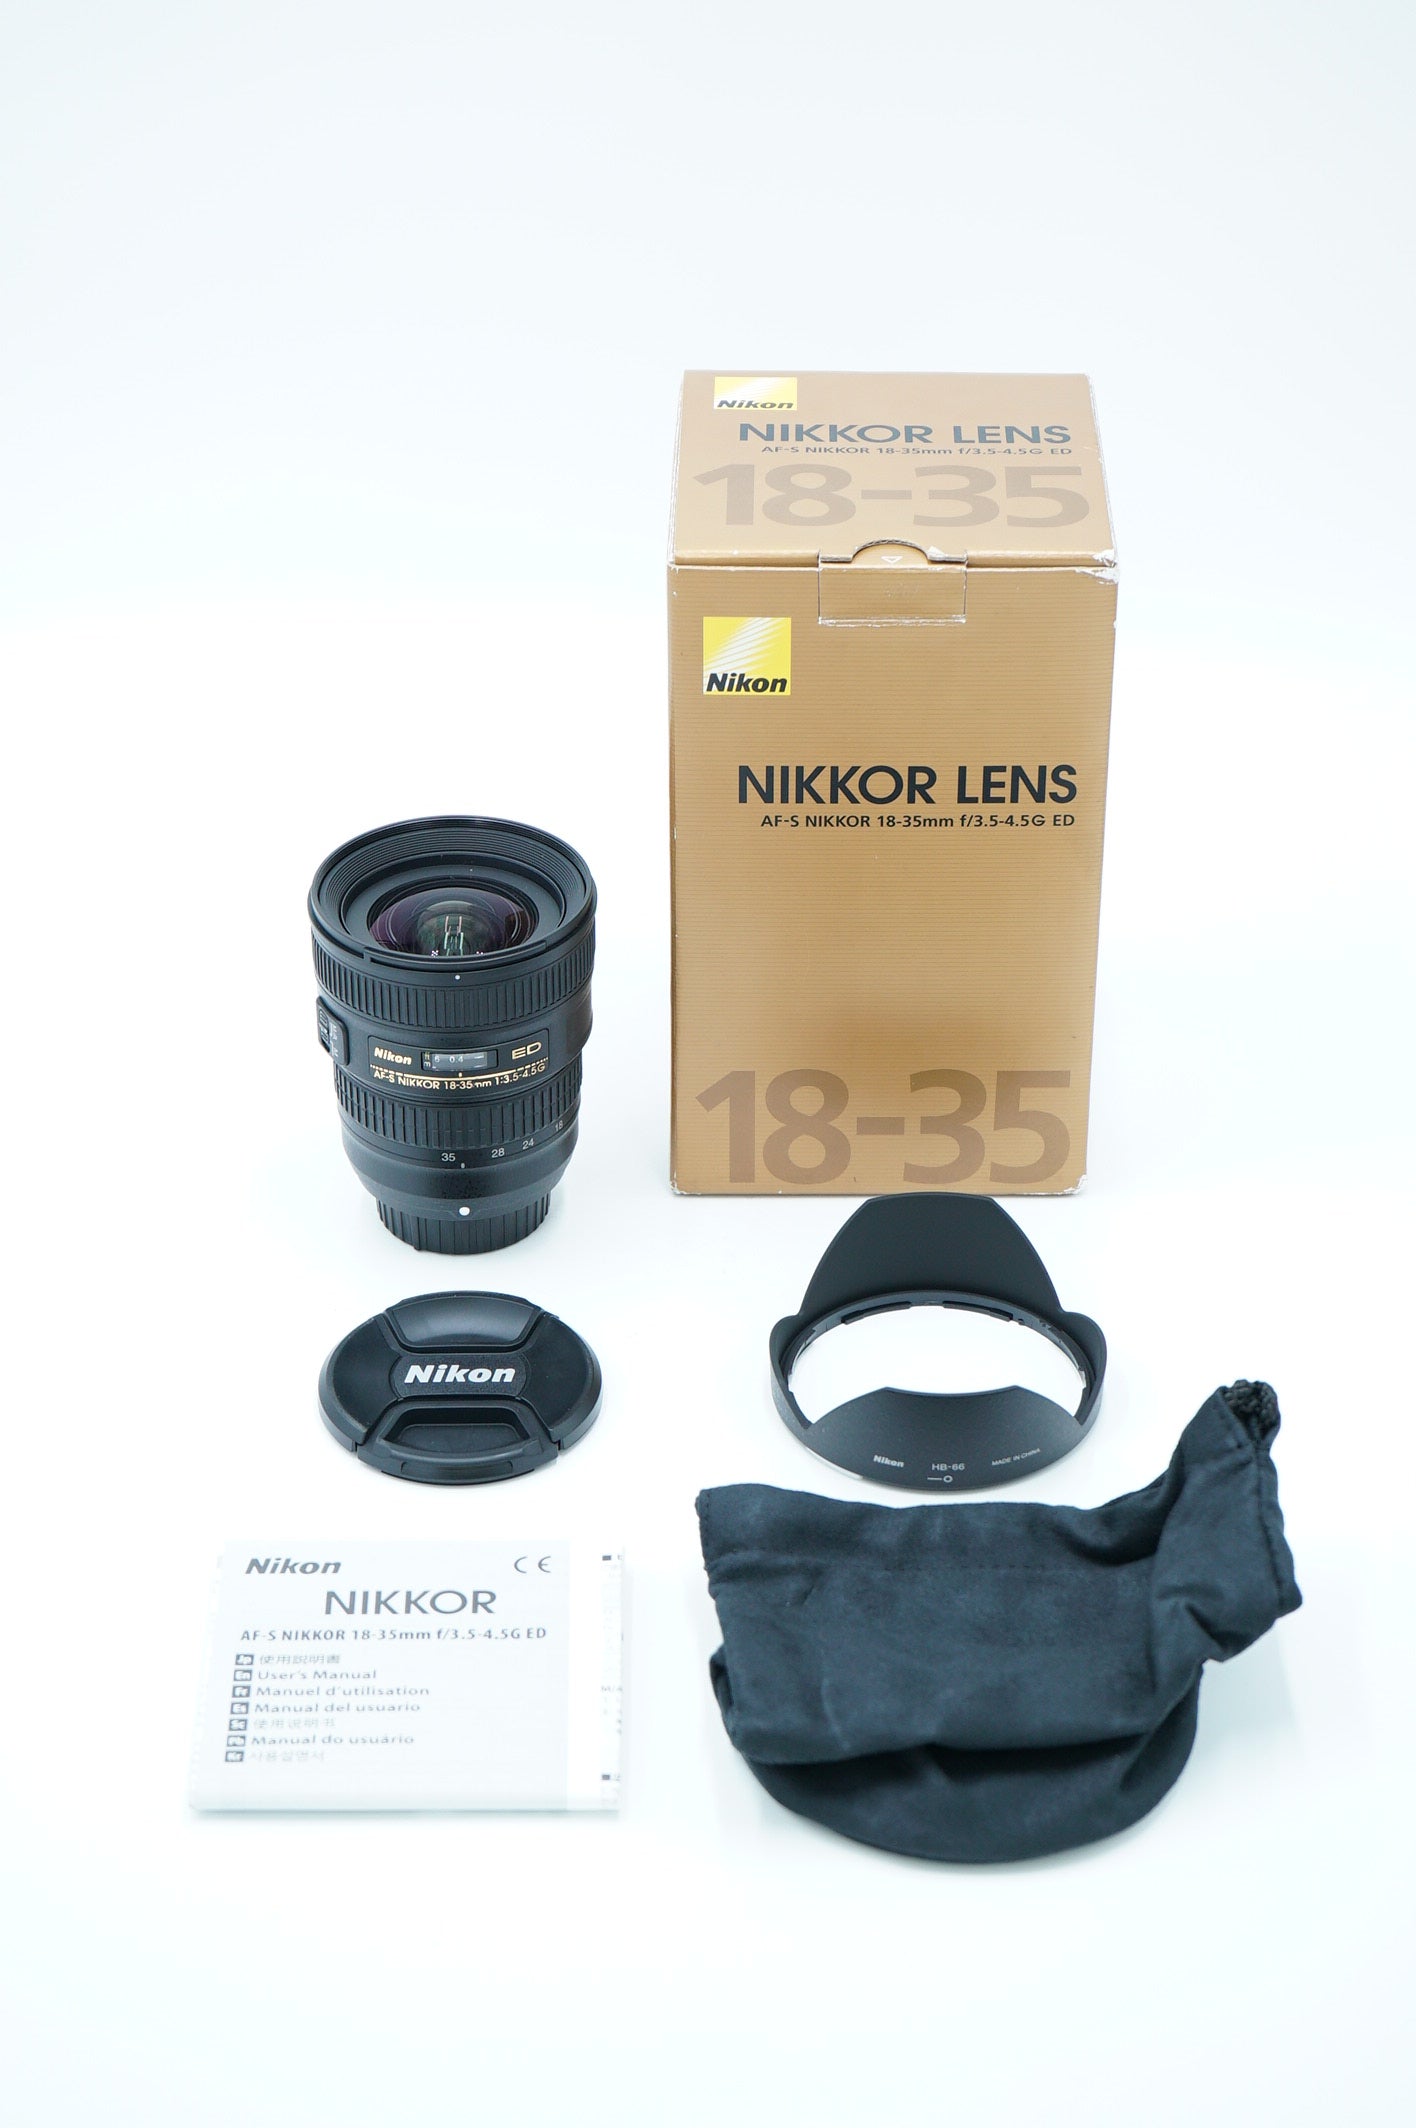 Nikon AFS1835/43209 AF-S Nikkor 18-35mm f/3.5-4.5G ED